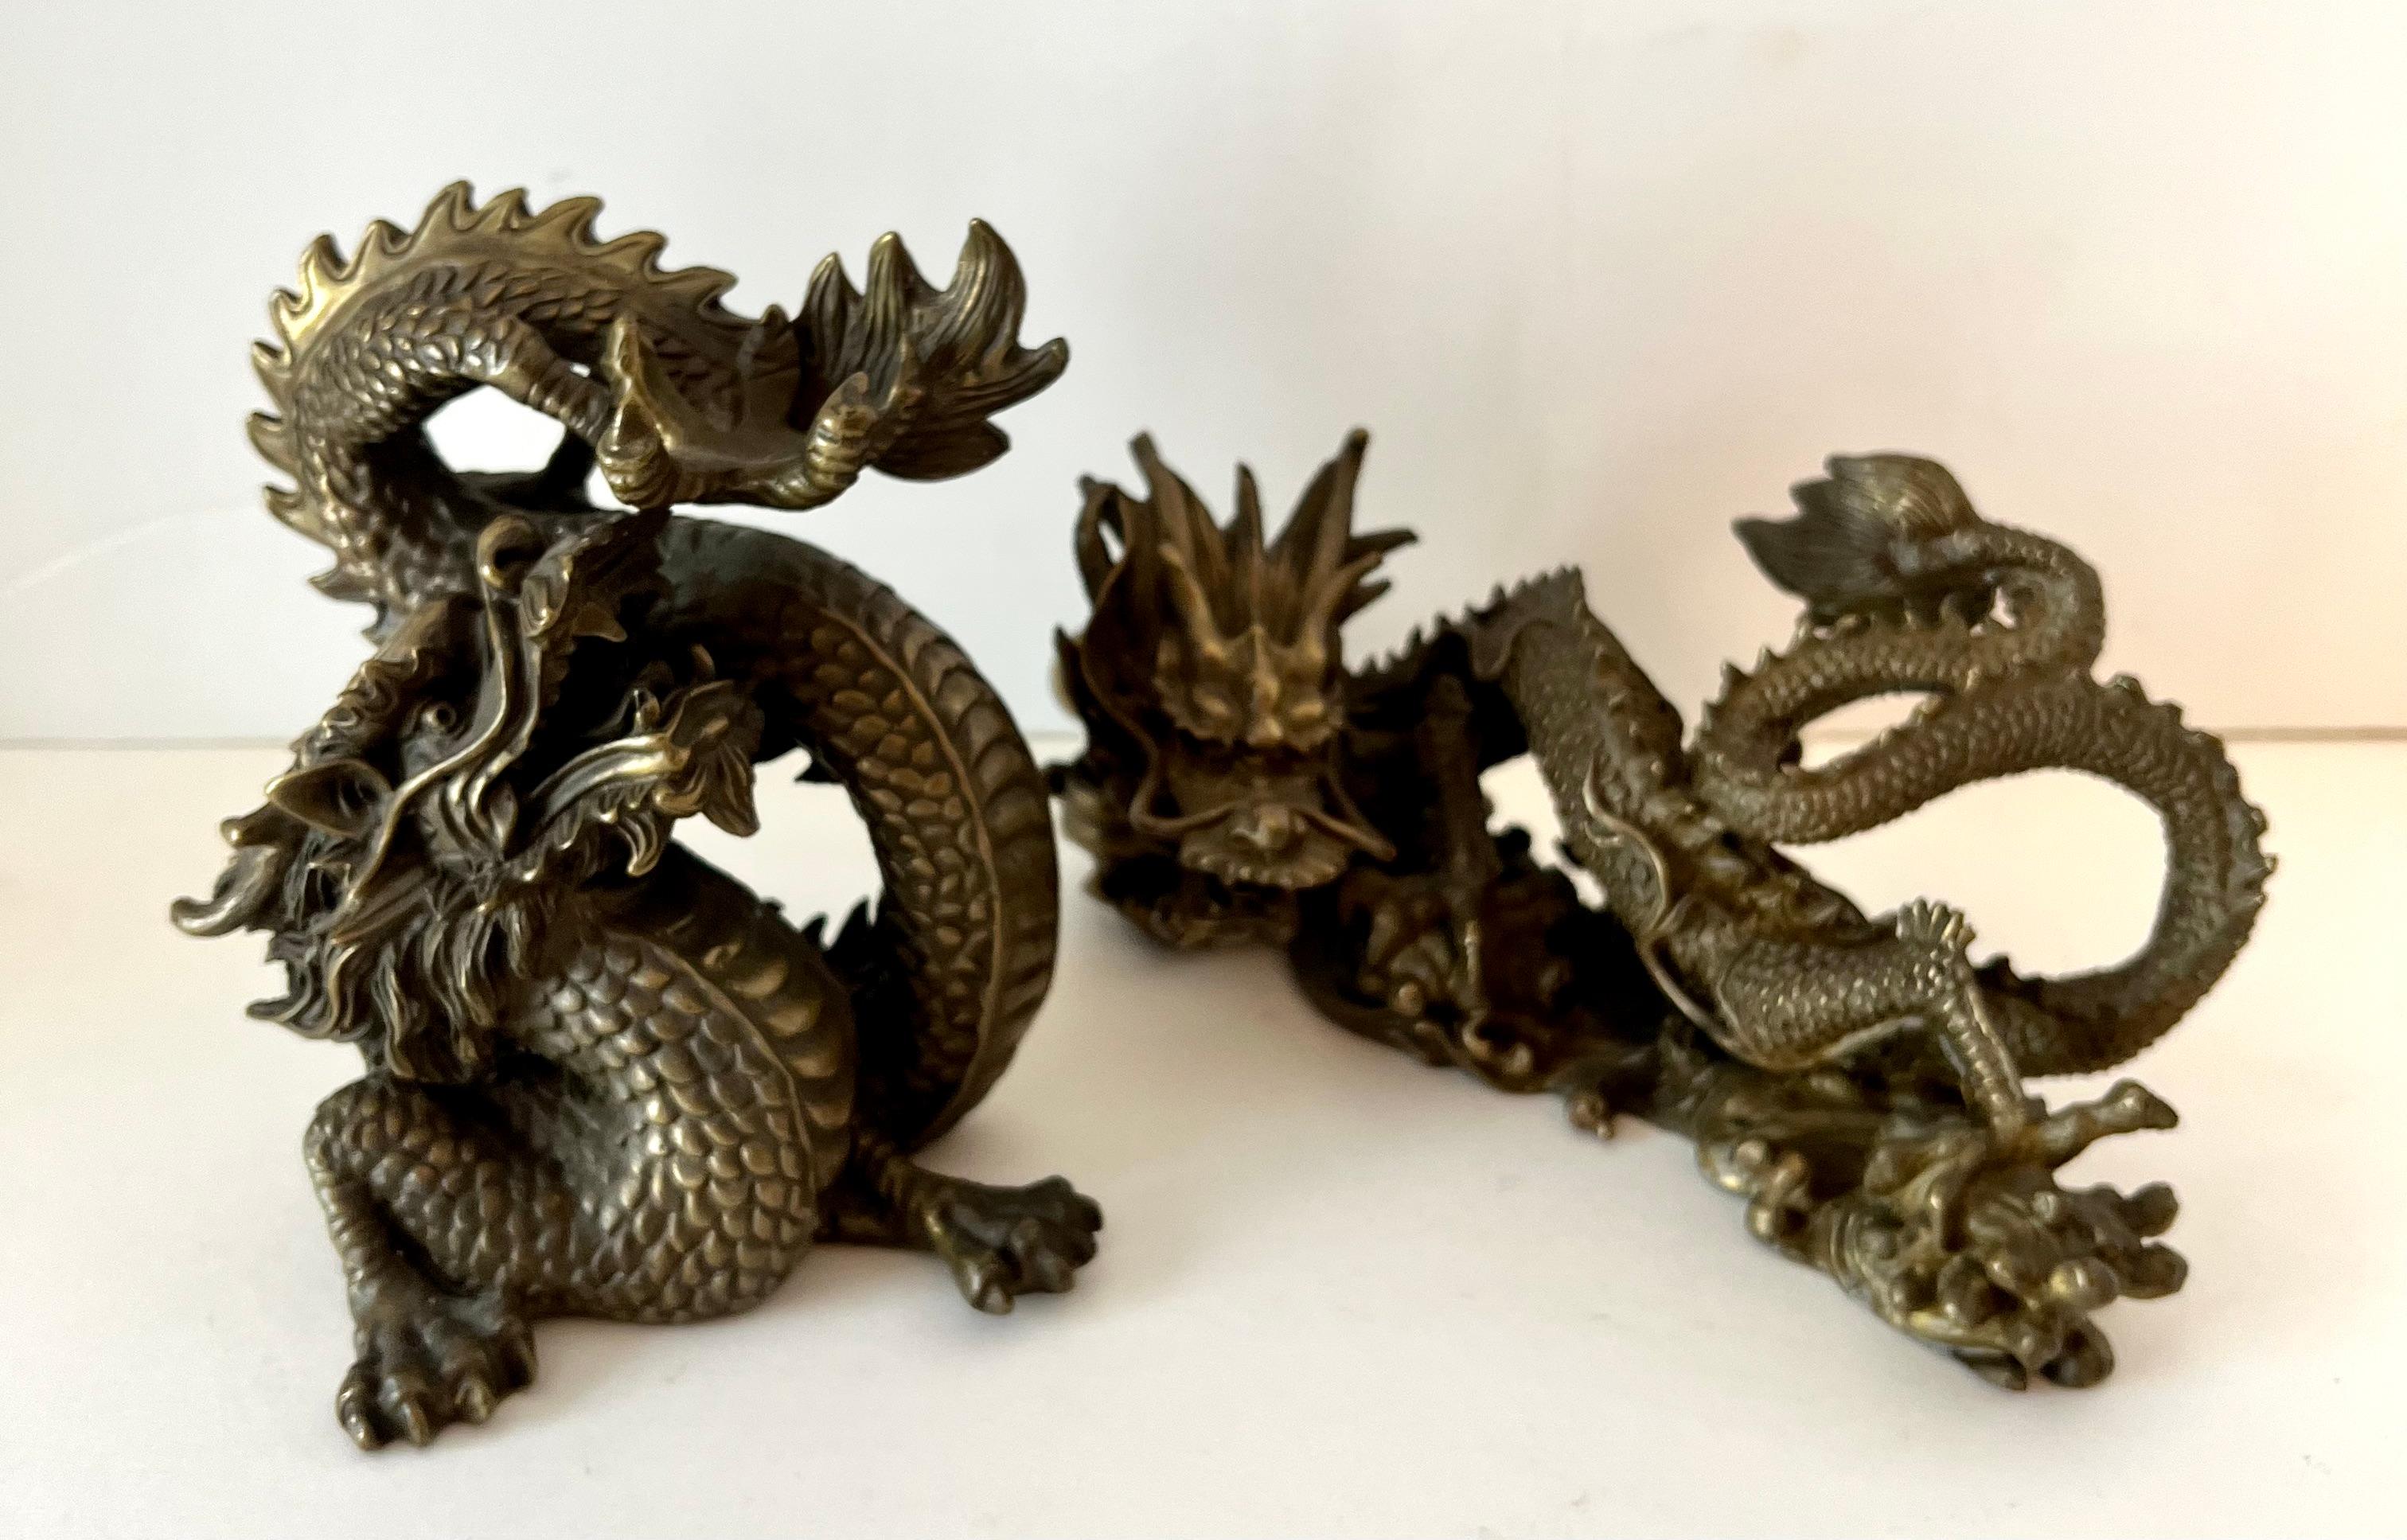 Une paire de Dragons - la paire est très belle et bien faite.  Ils pèsent chacun environ 2,5 livres, ce qui les rend non seulement décoratifs, mais aussi utilisables comme serre-livres ou presse-papiers.

une mesure :  3.5